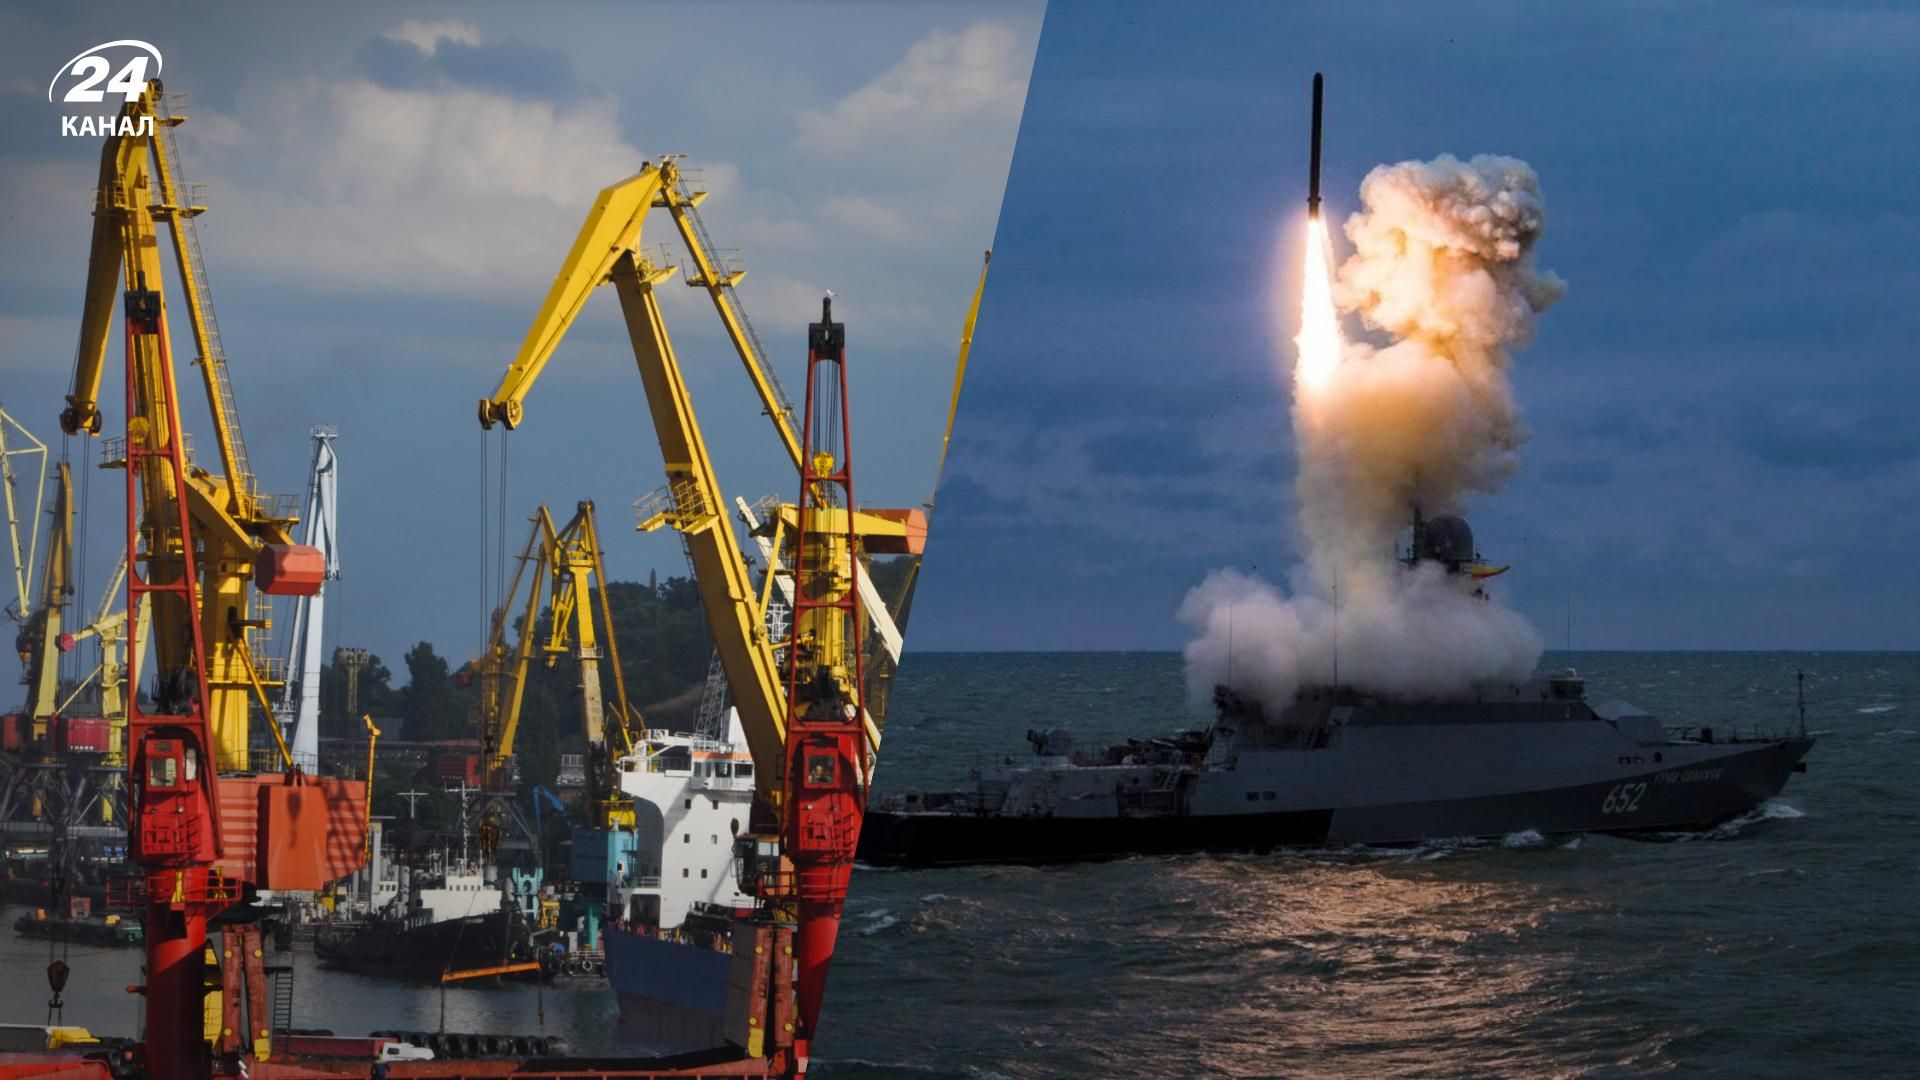 Обстріл Одеського порту 23.07.2022 - російські військові випустили 4 ракети Калібр